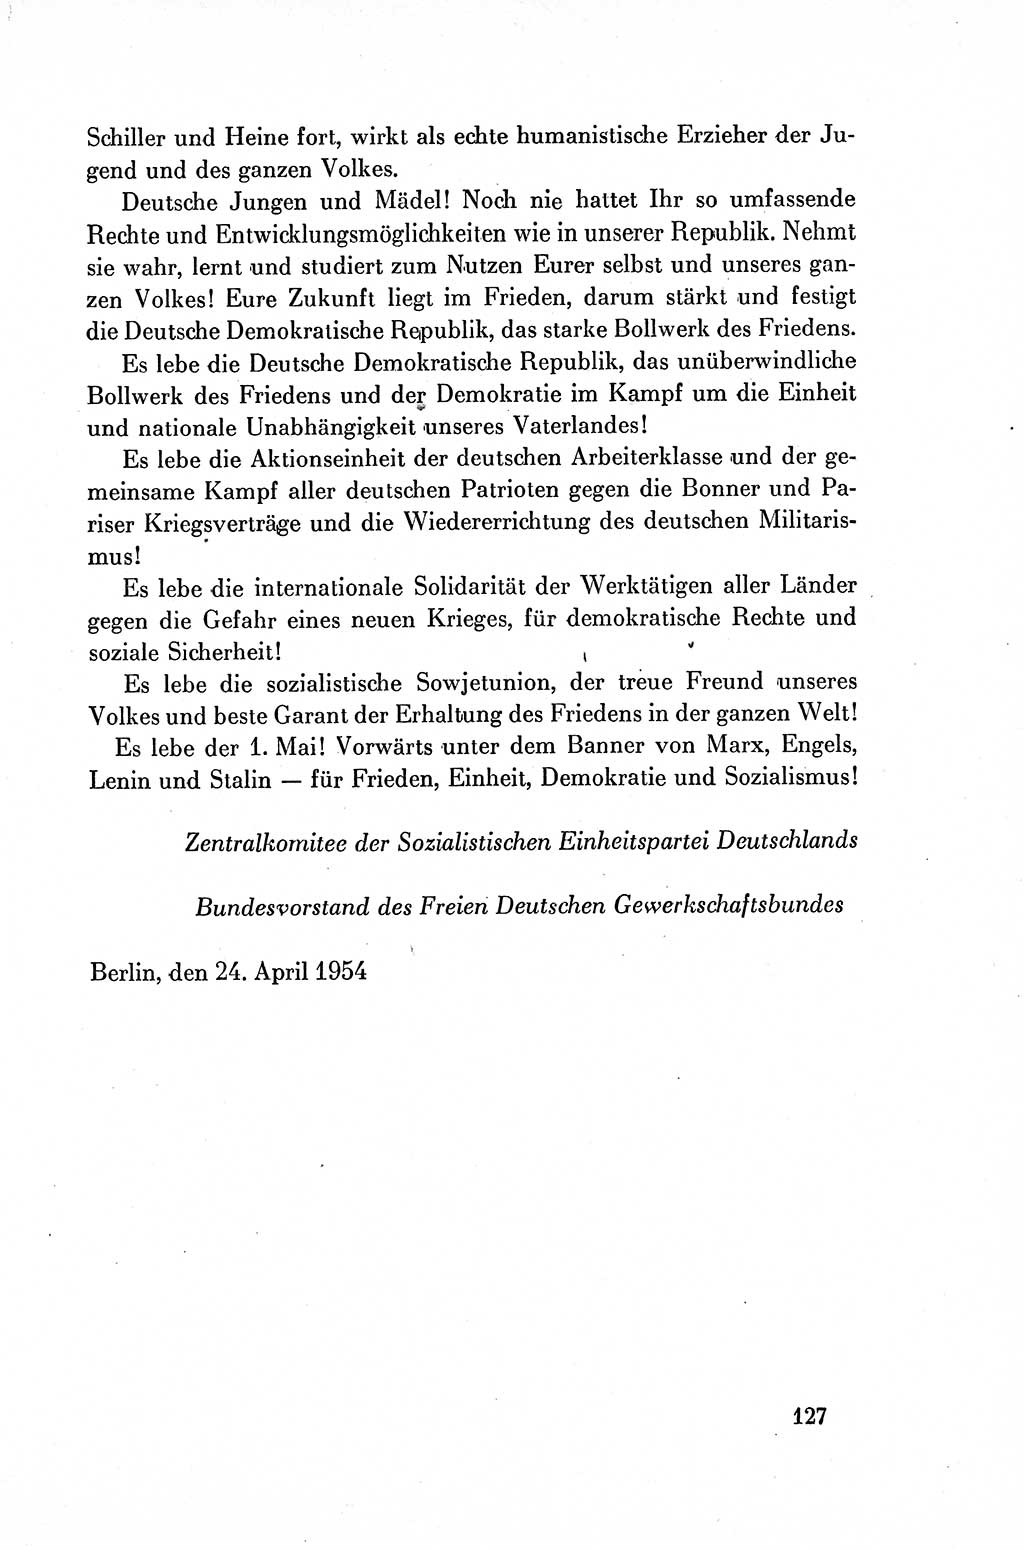 Dokumente der Sozialistischen Einheitspartei Deutschlands (SED) [Deutsche Demokratische Republik (DDR)] 1954-1955, Seite 127 (Dok. SED DDR 1954-1955, S. 127)